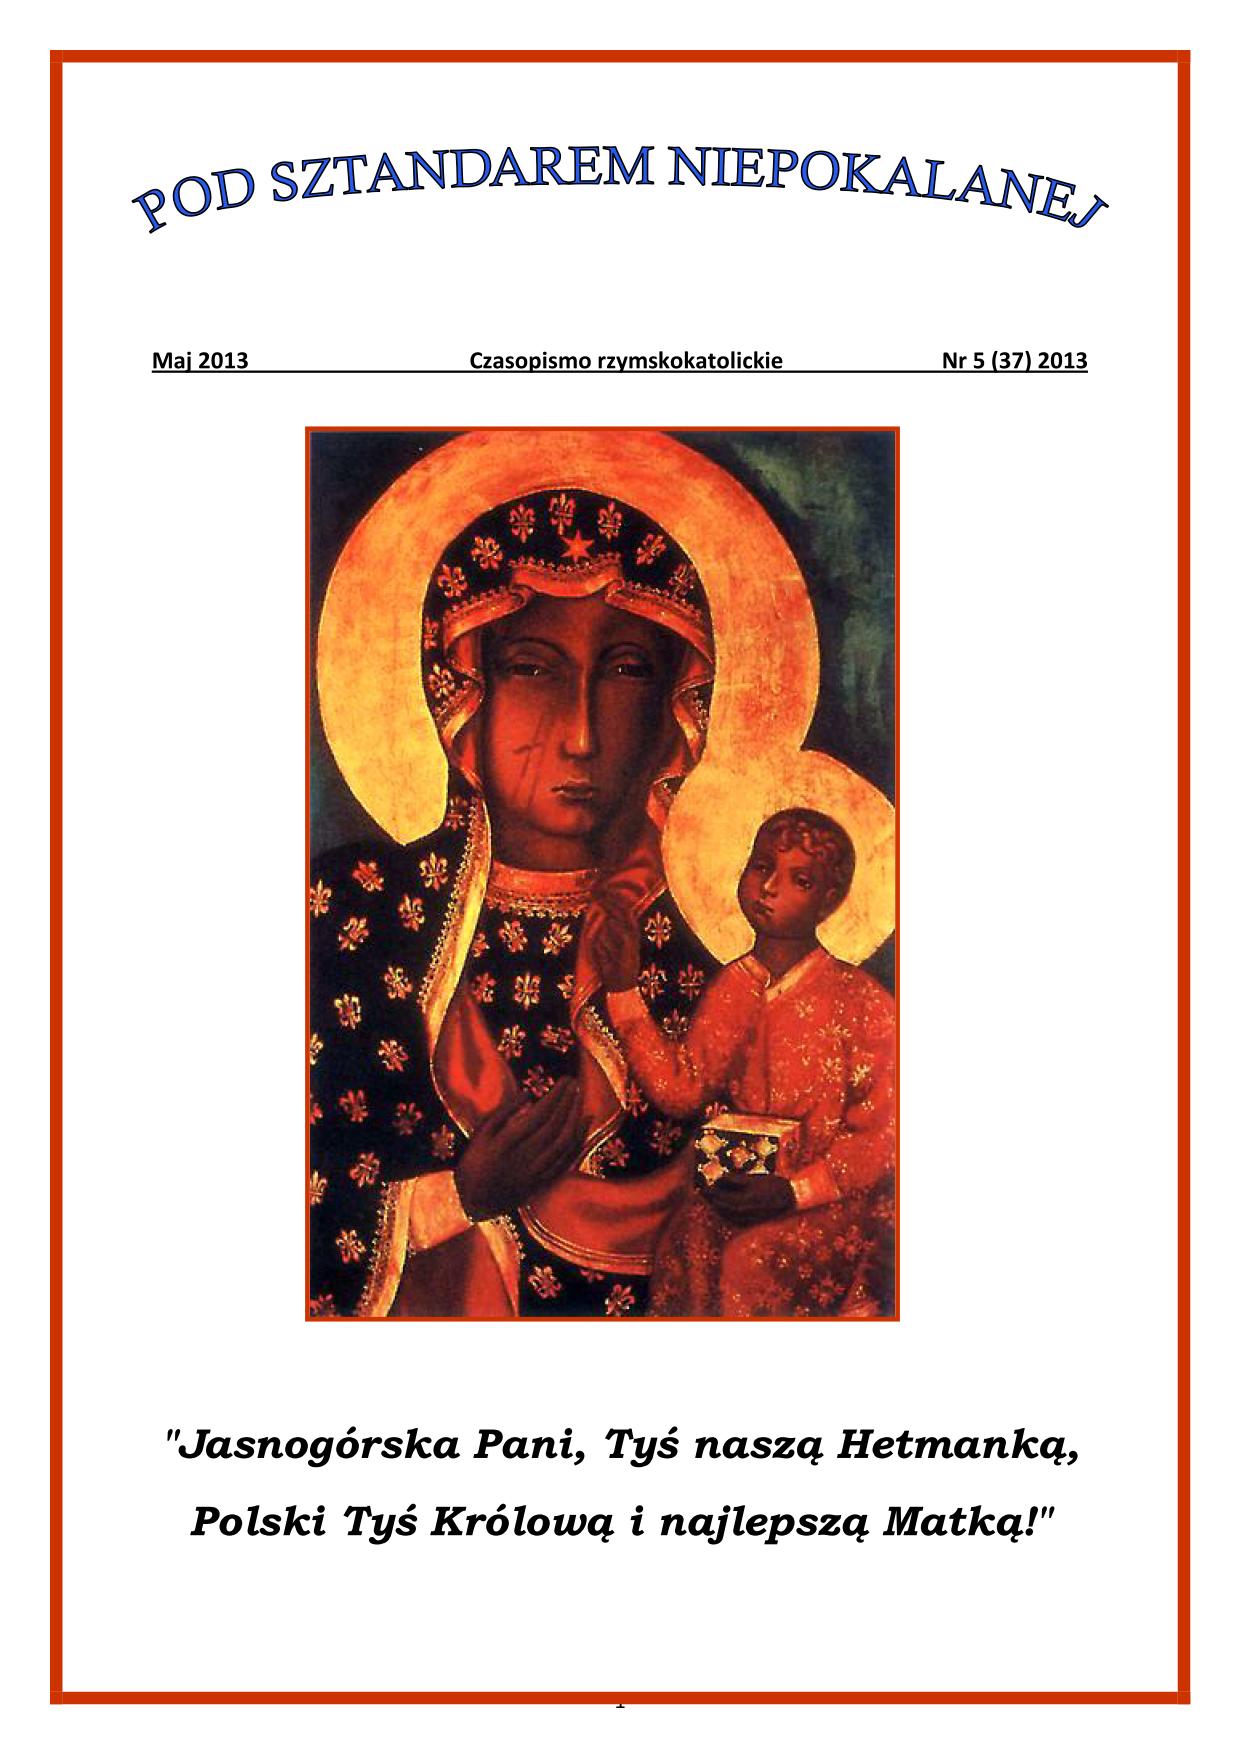 "Pod Sztandarem Niepokalanej". Nr 37. Maj 2013. Czasopismo rzymskokatolickie.